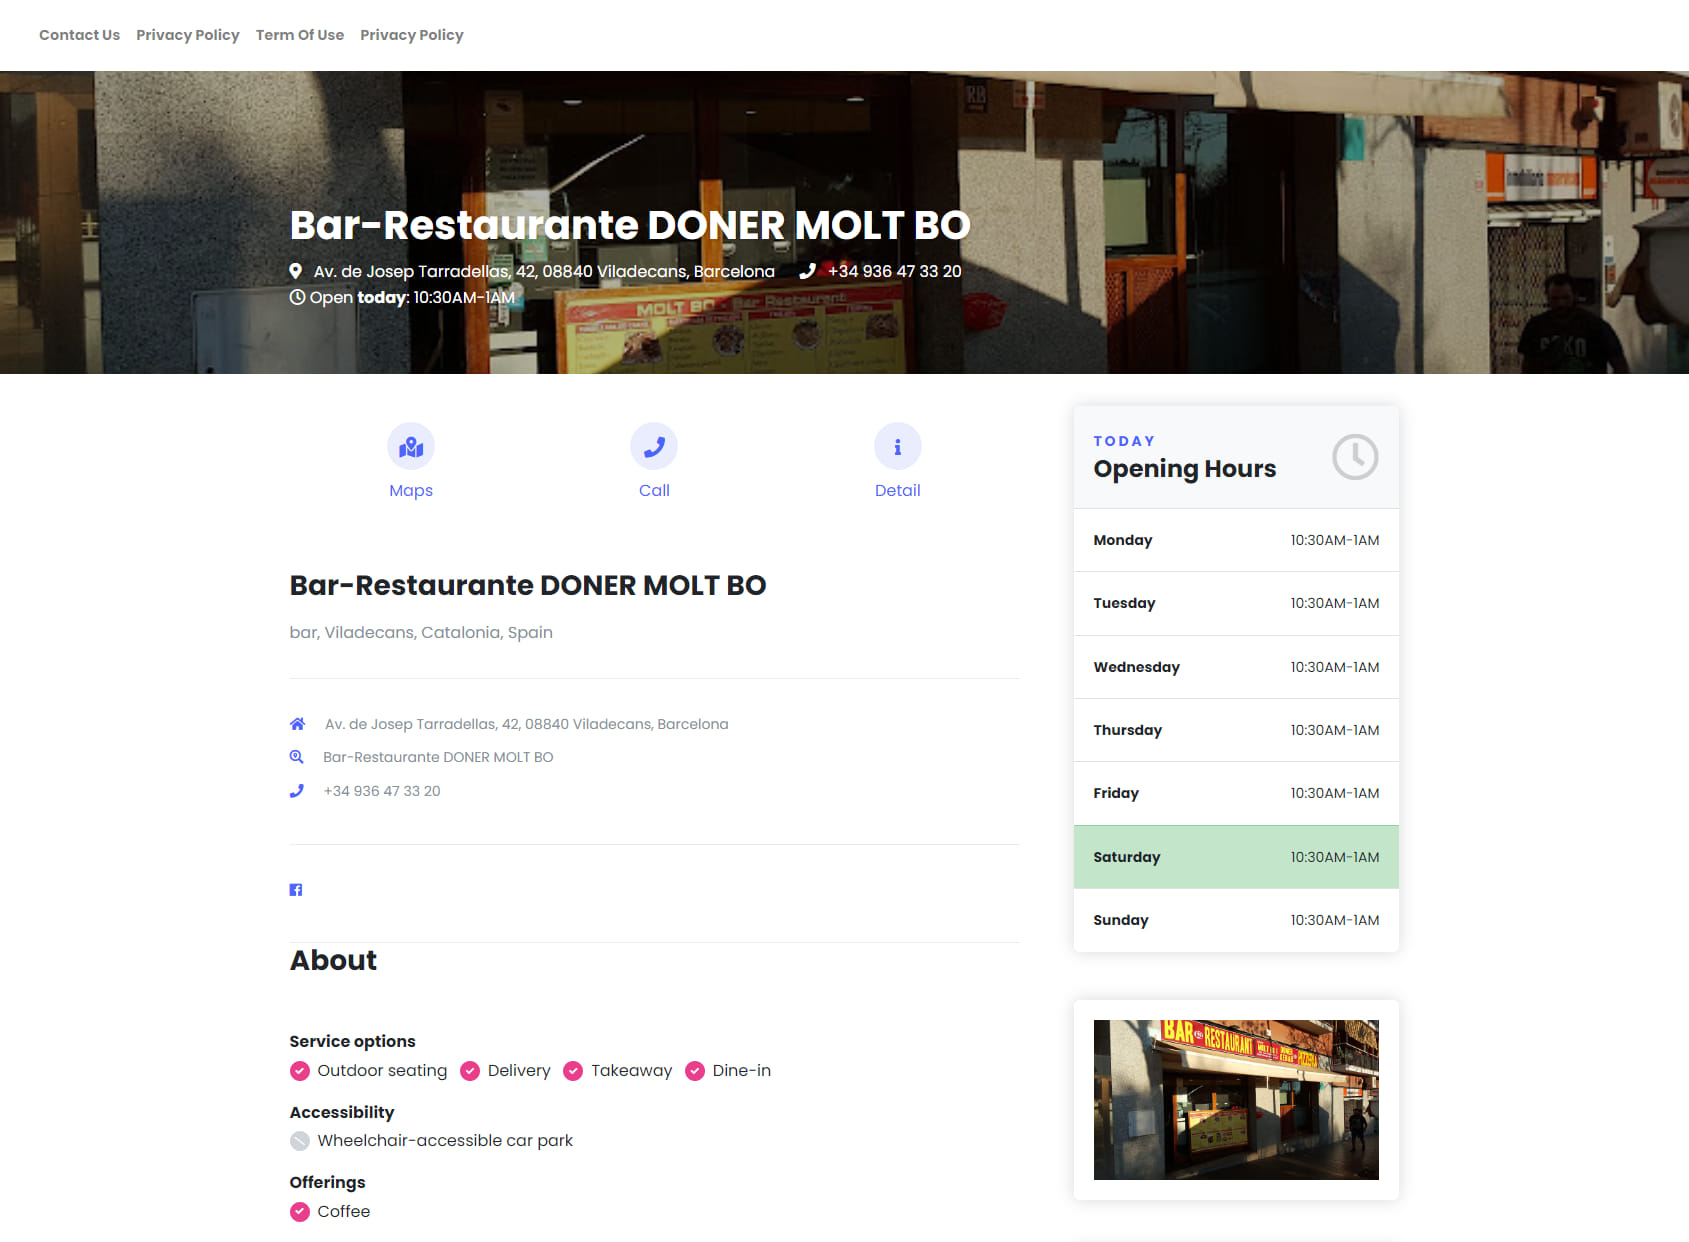 Bar-Restaurante DONER MOLT BO